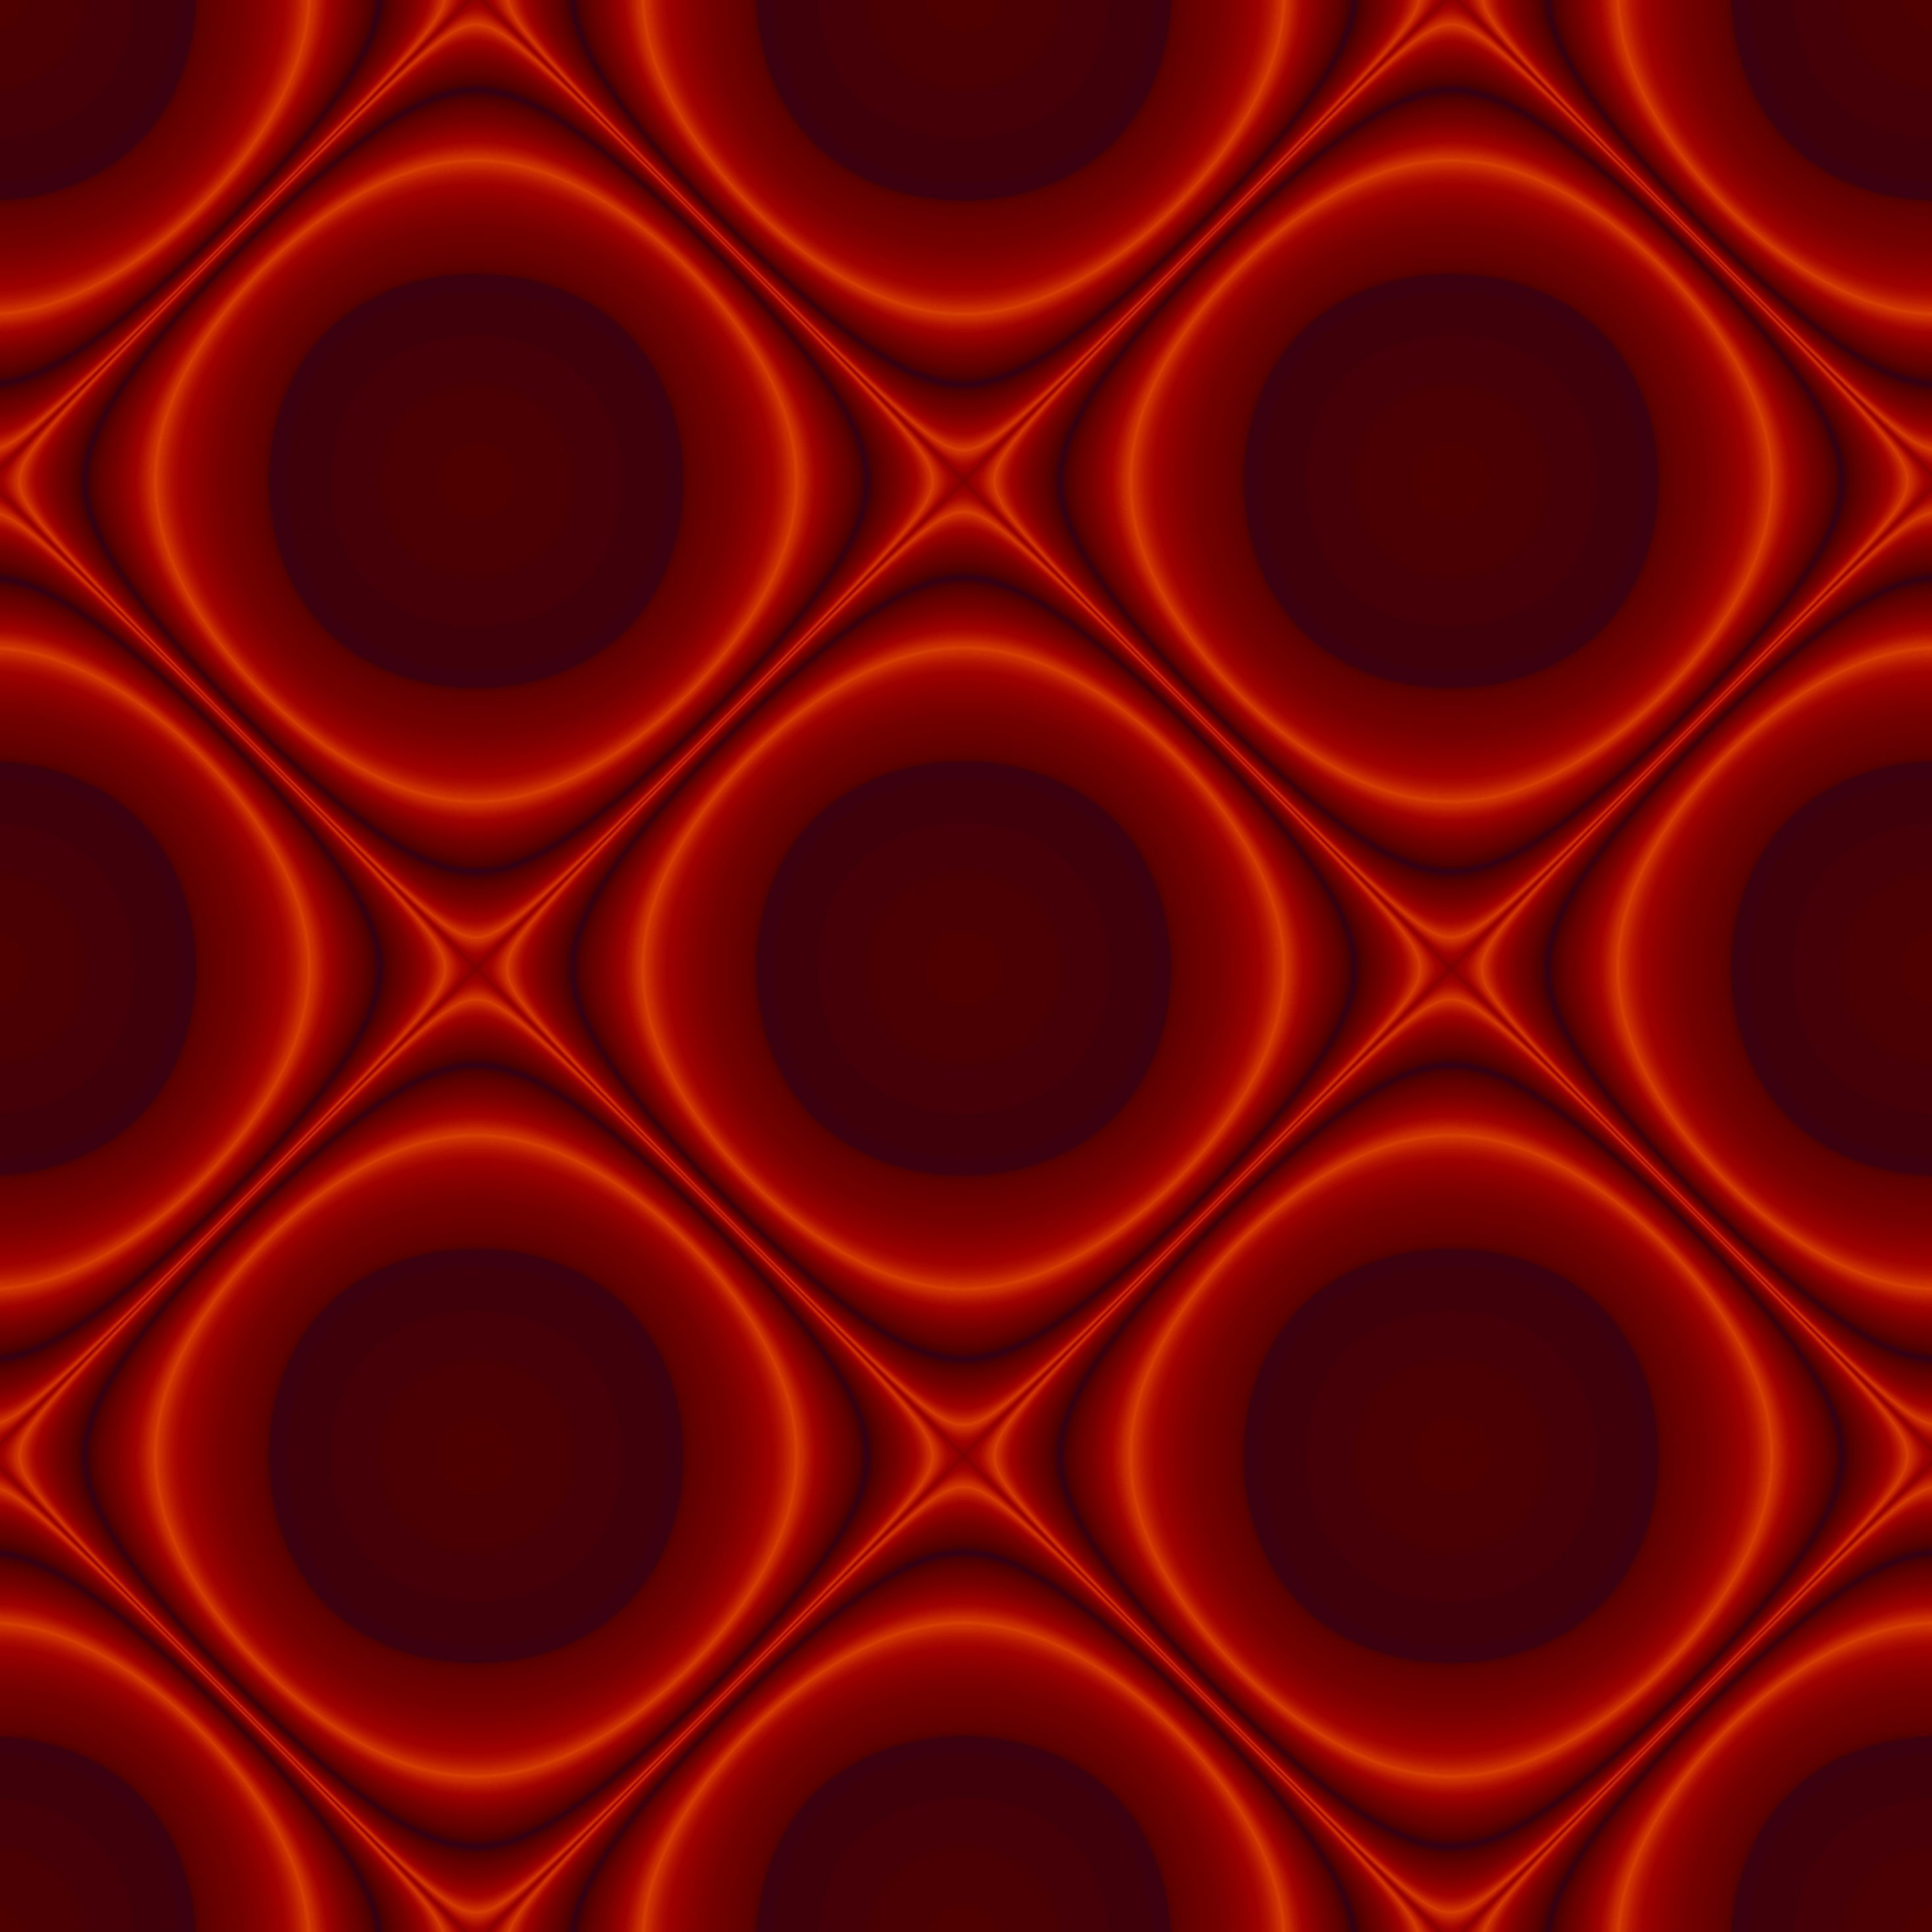 2934x2934 iOS iPad wallpaper 4k Abstract Pattern Design Red Ipad Wallpaper 2934x2934 pixels resolution